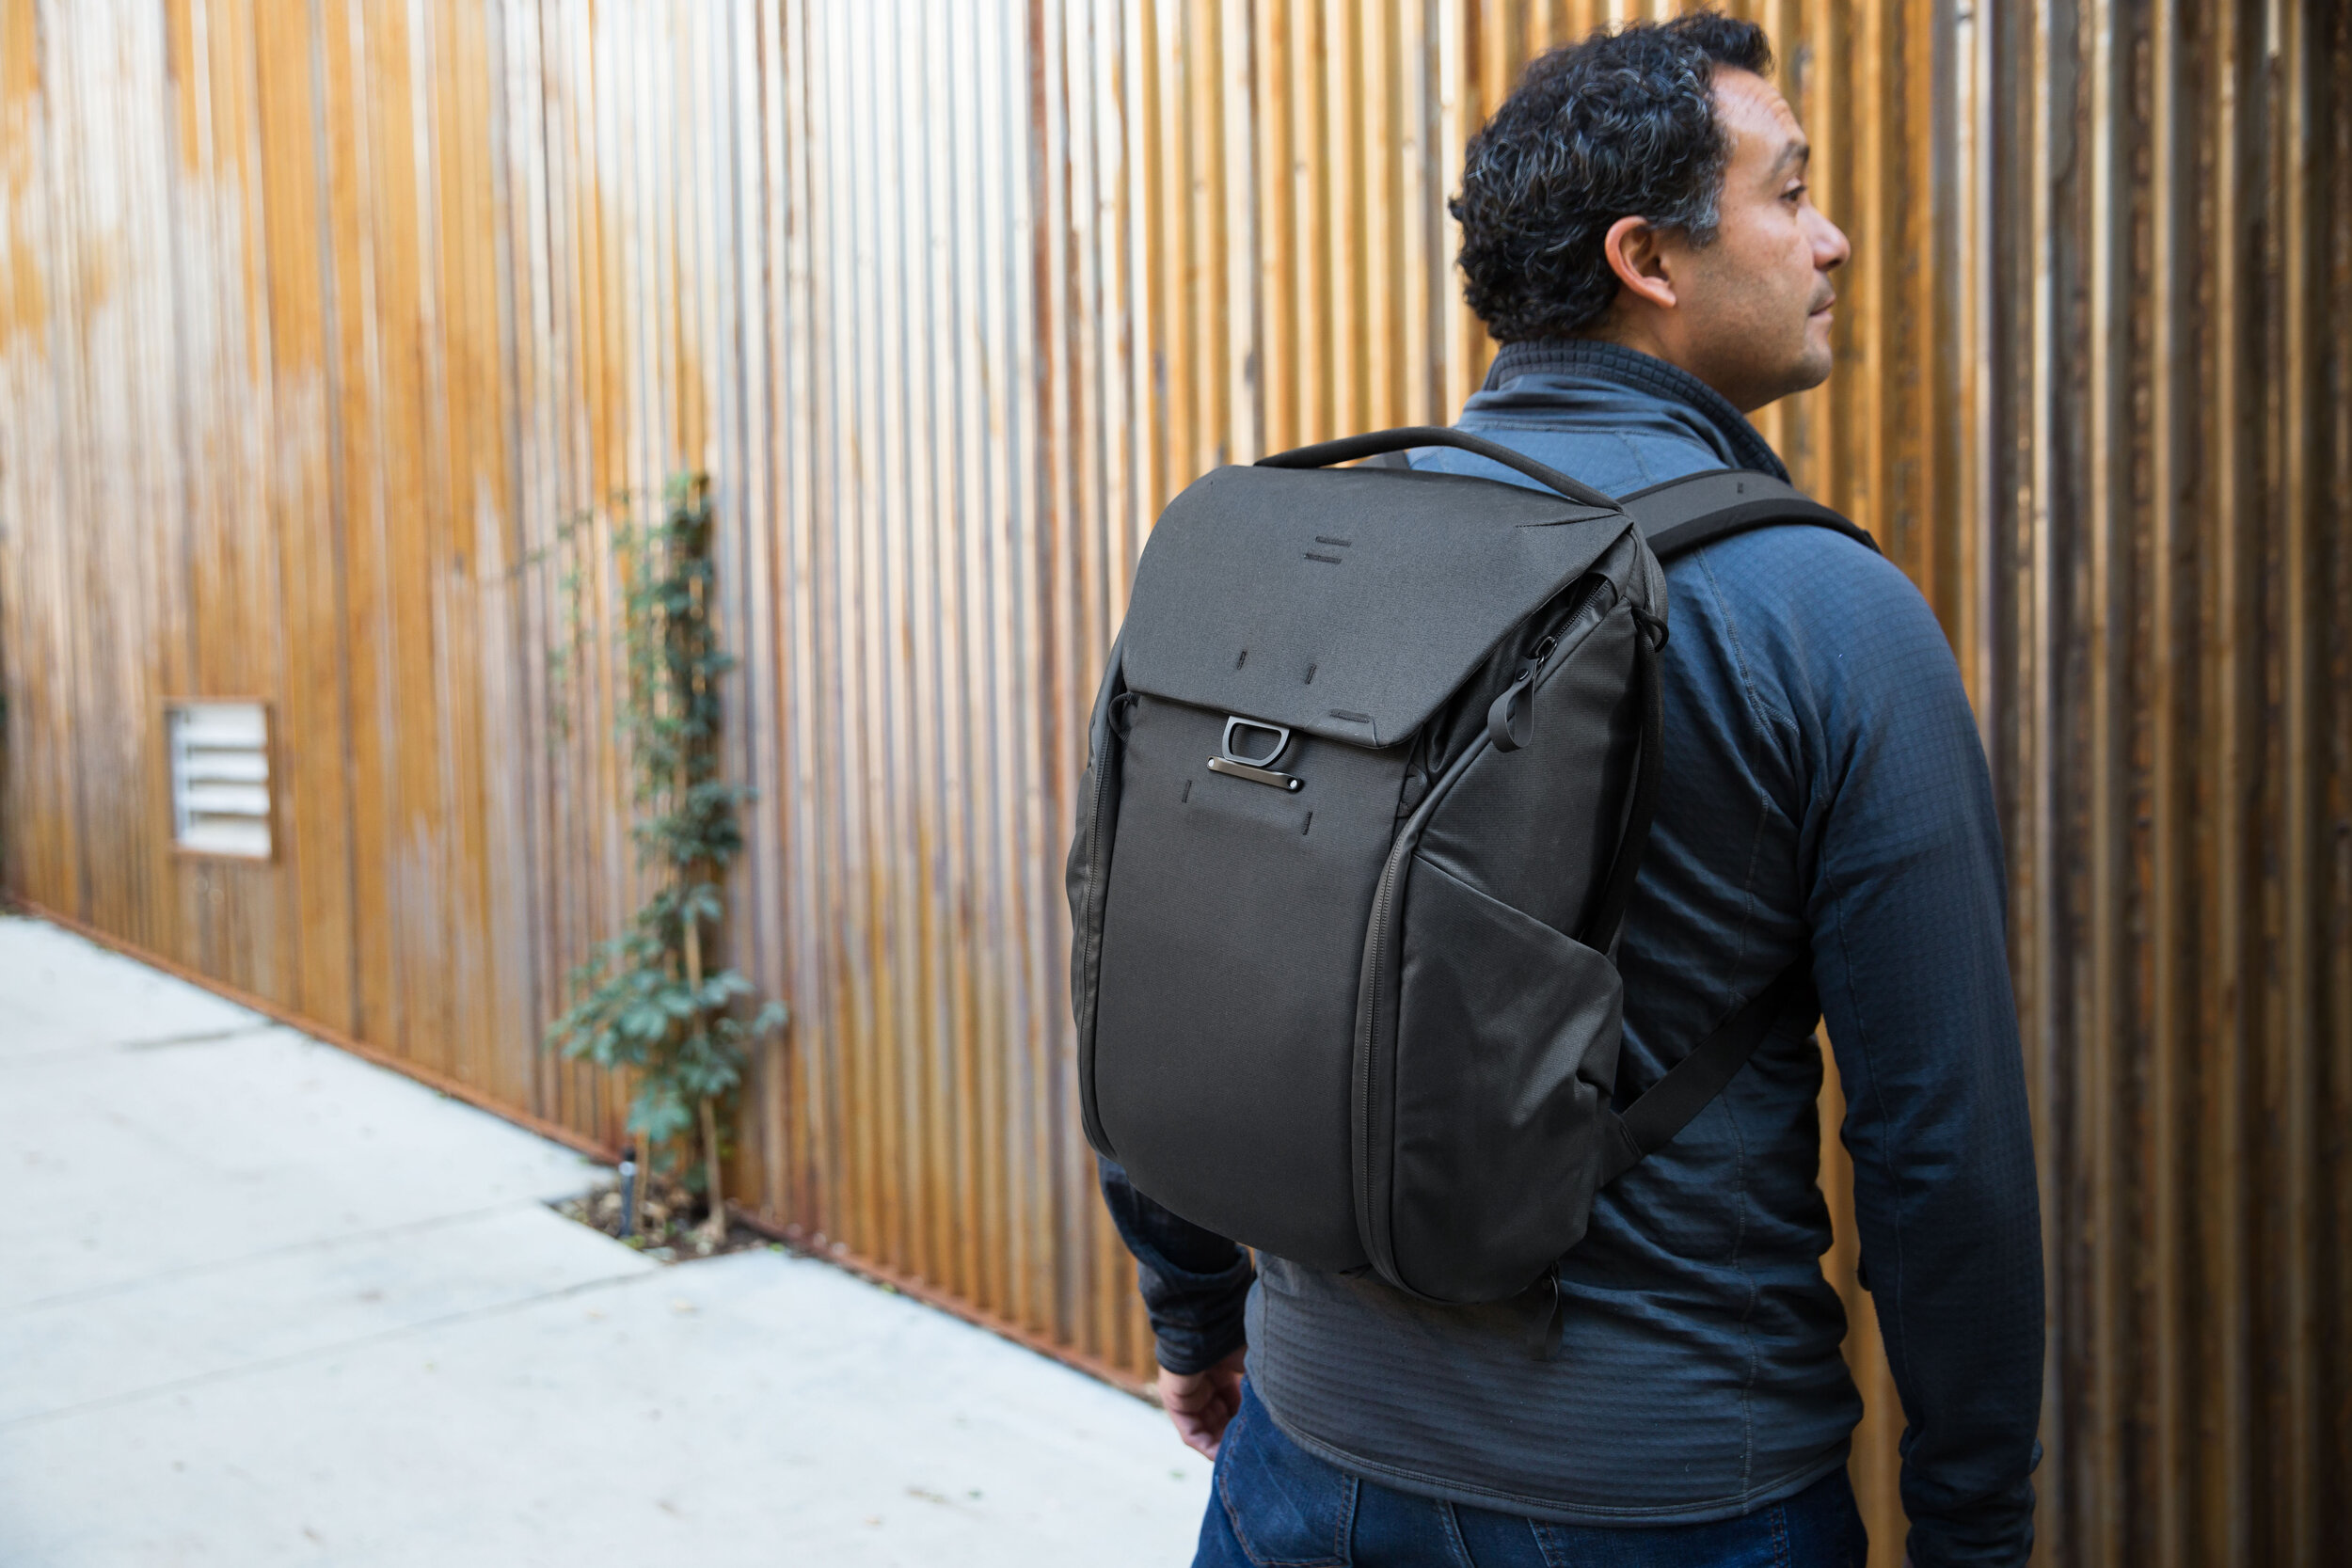 Peak Design Everyday Backpack 30L (V2) Review